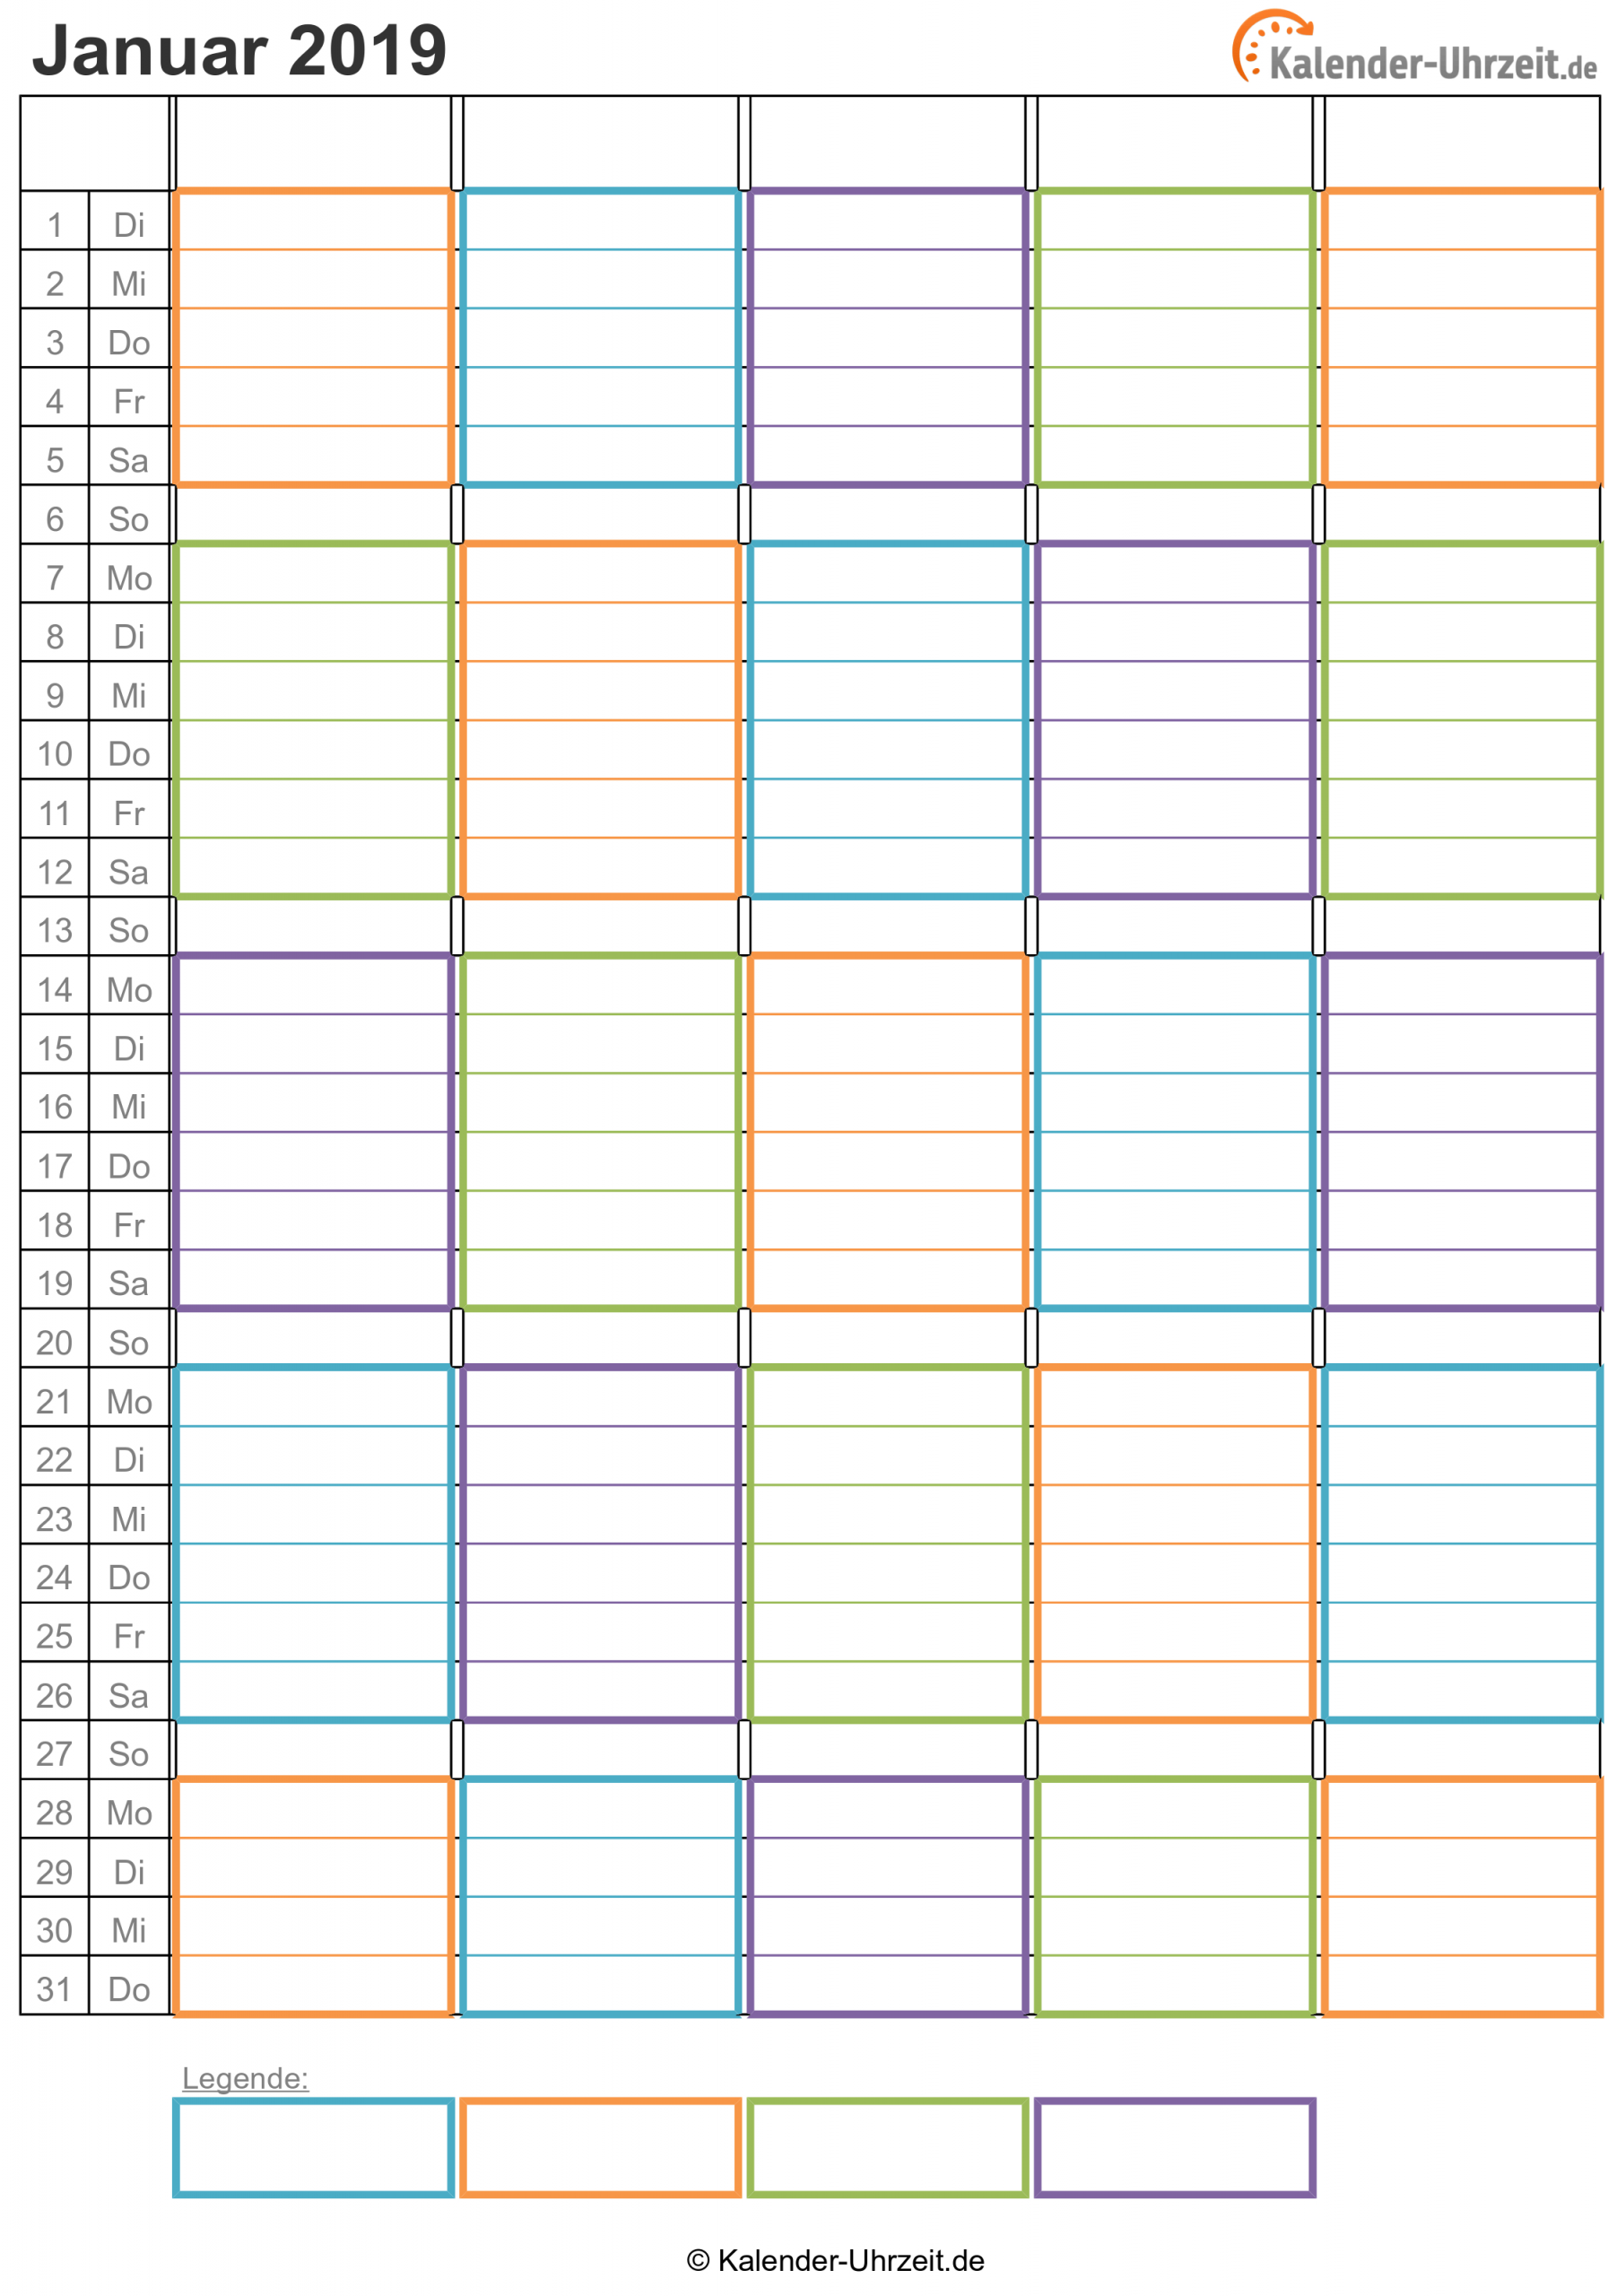 Kalender 2019 Zum Ausdrucken - Kostenlos in Tageskalender Zum Ausdrucken